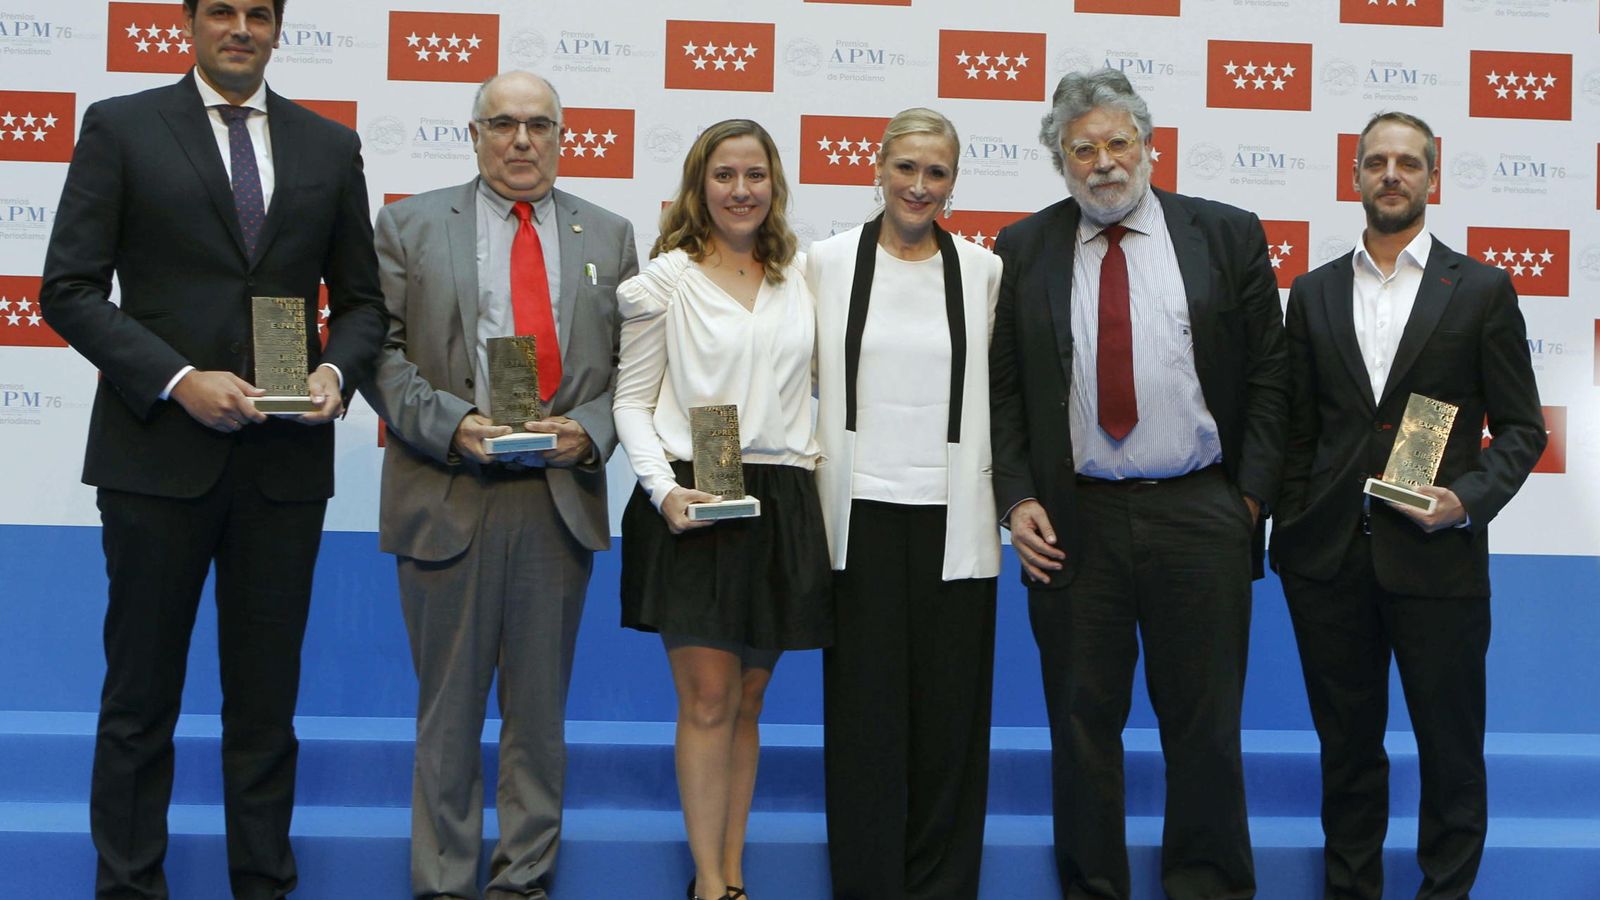 Foto: La presidenta de la CAM Cristina Cifuentes (3d) junto a José María Olmo (i), Pedro Blasco (2i), Ana I. Gracia (c), Joaquín Estefanía (2d) y Ángel Martínez (d) posan con los premios de la APM. (EFE)